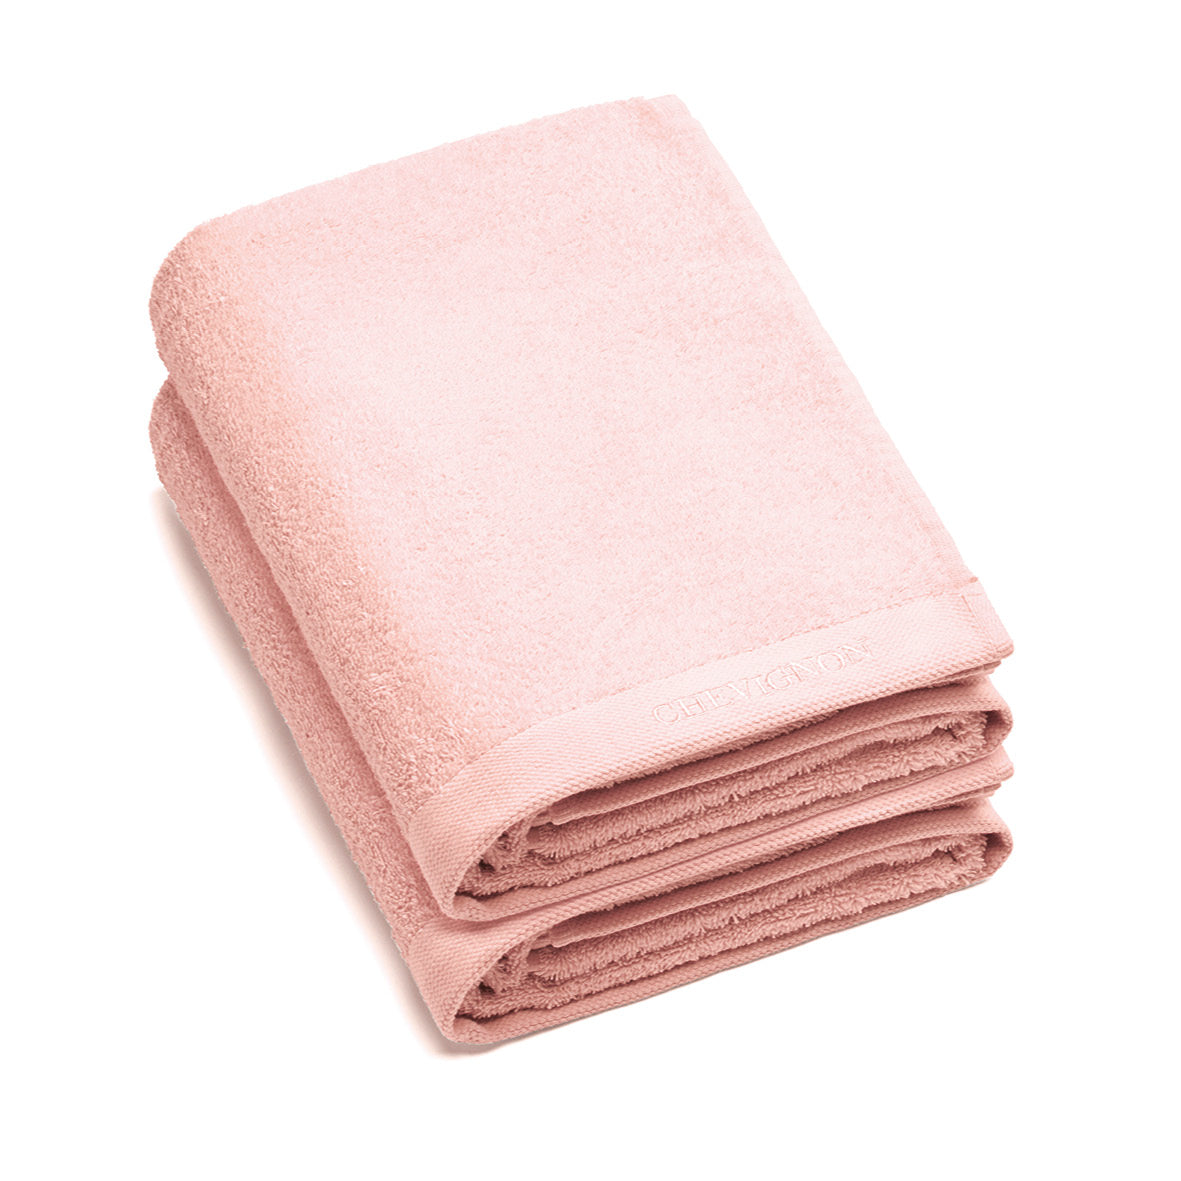 Set of 2 bath towels - 70 x 140 cm